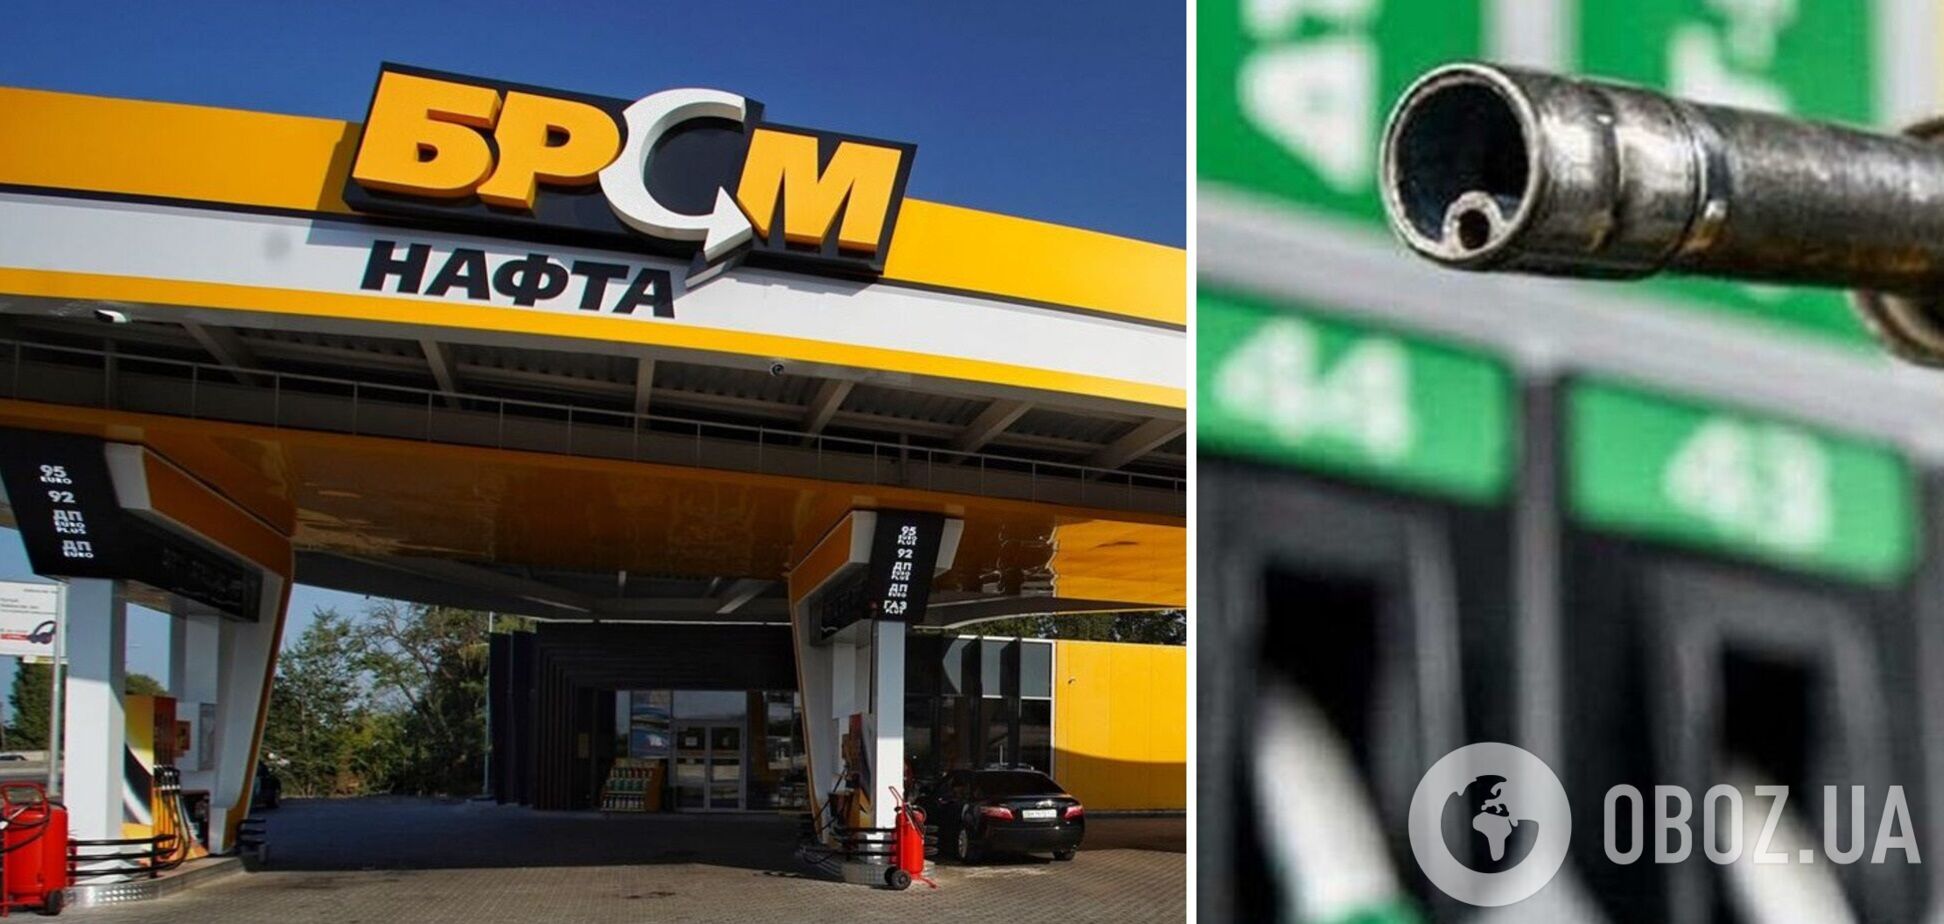 Суд підтвердив, що 'БРСМ-Нафта' продає фальсифікат бензину